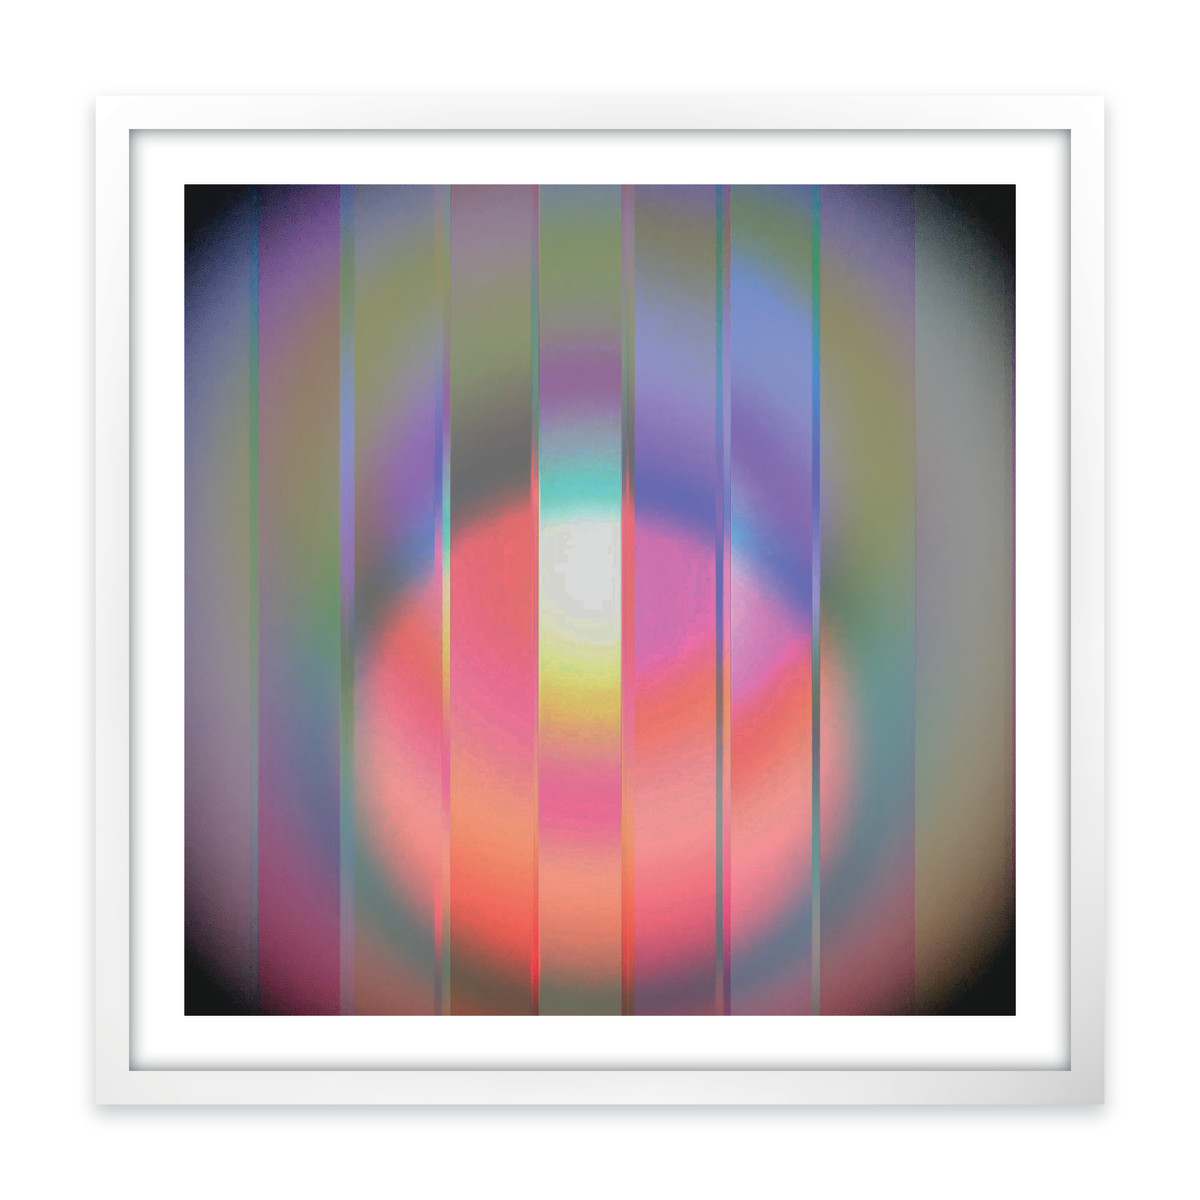 Energy Spheres 14 (framed) by Nicola Parente (Multidisciplinary Artist) 